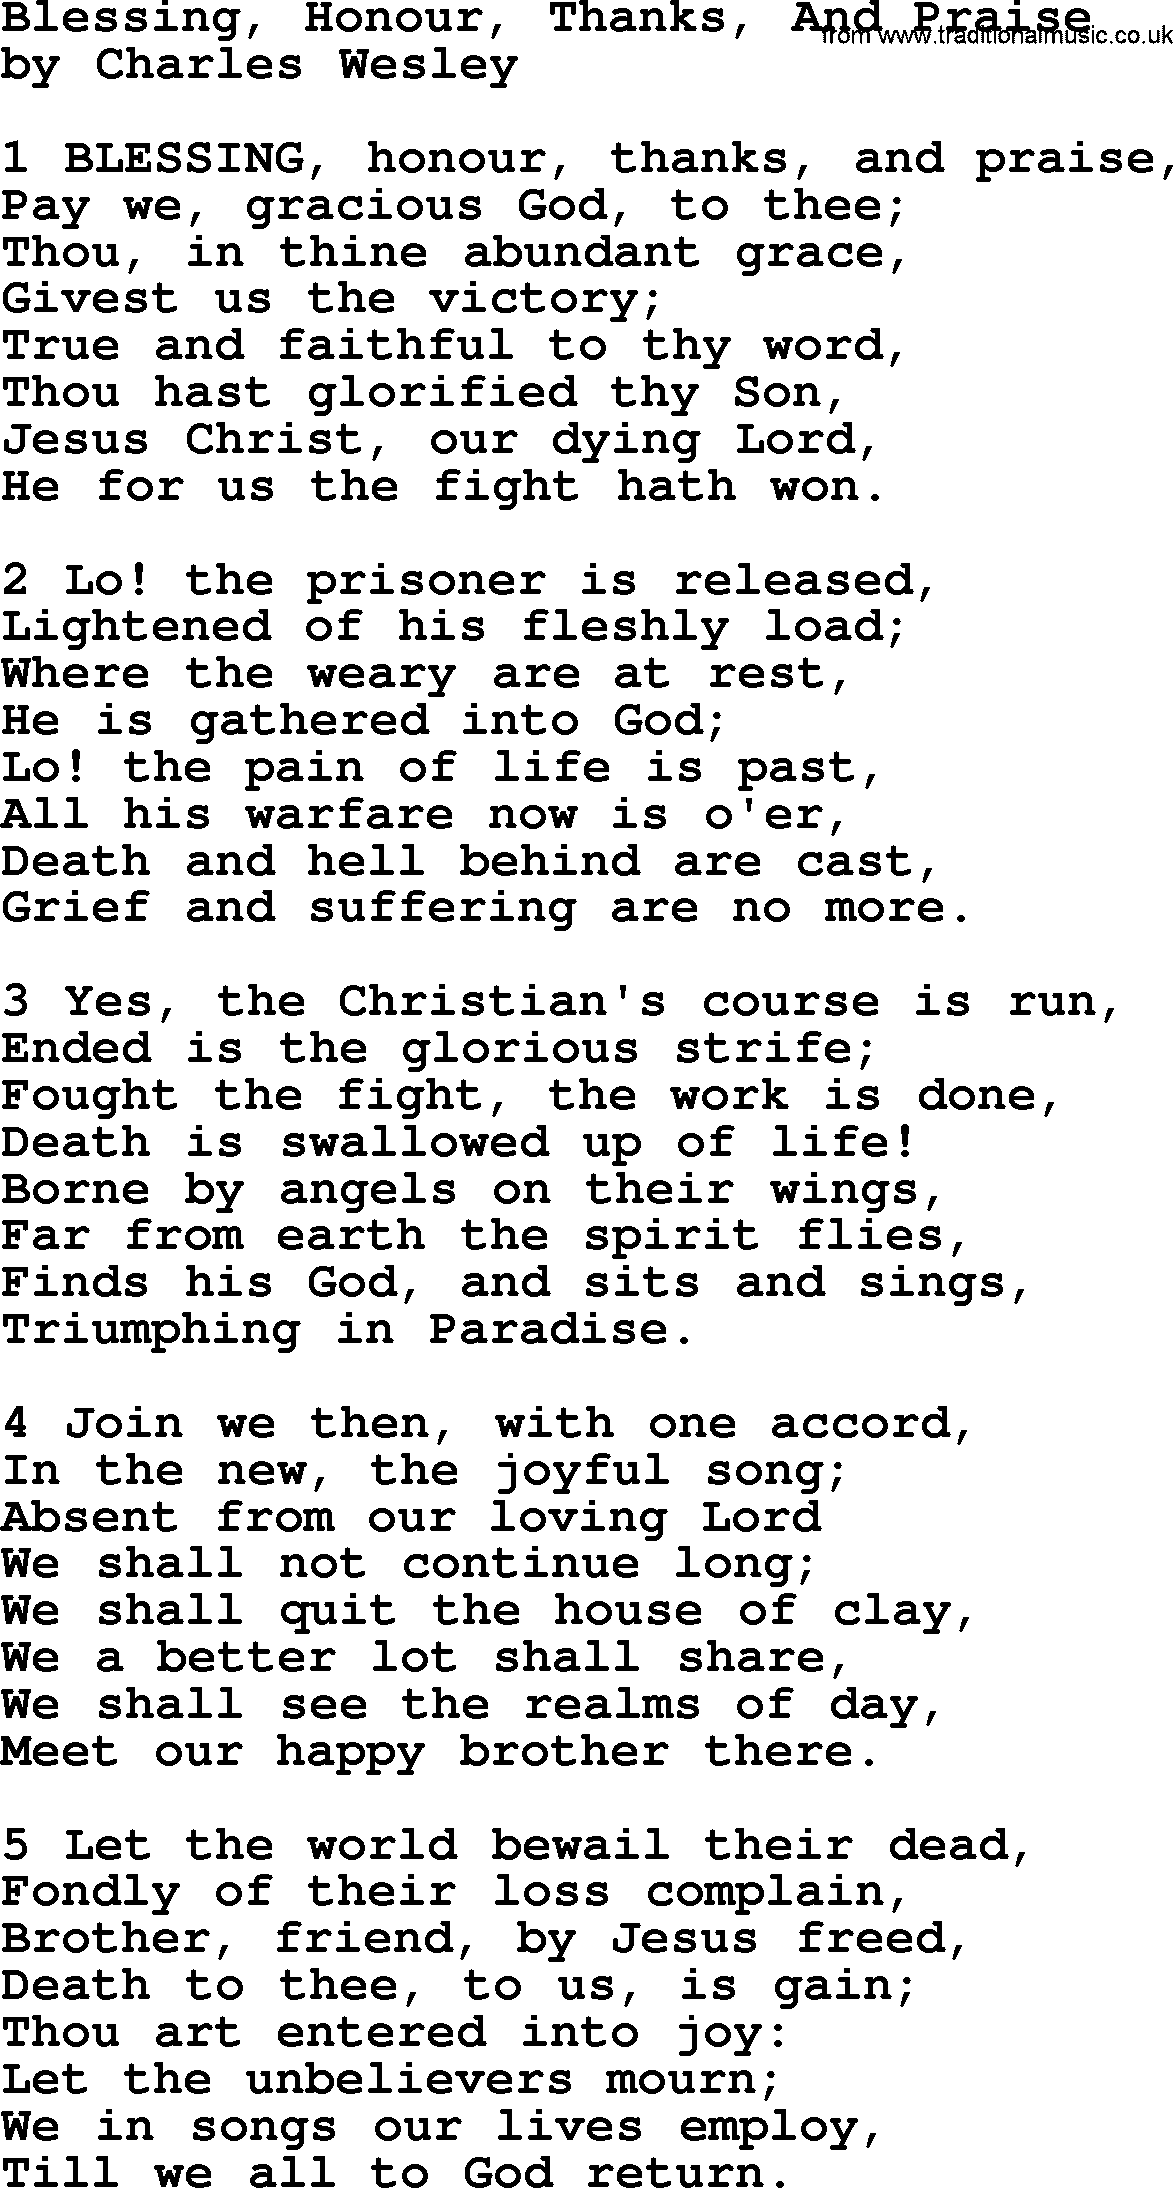 Charles Wesley hymn: Blessing, Honour, Thanks, And Praise, lyrics